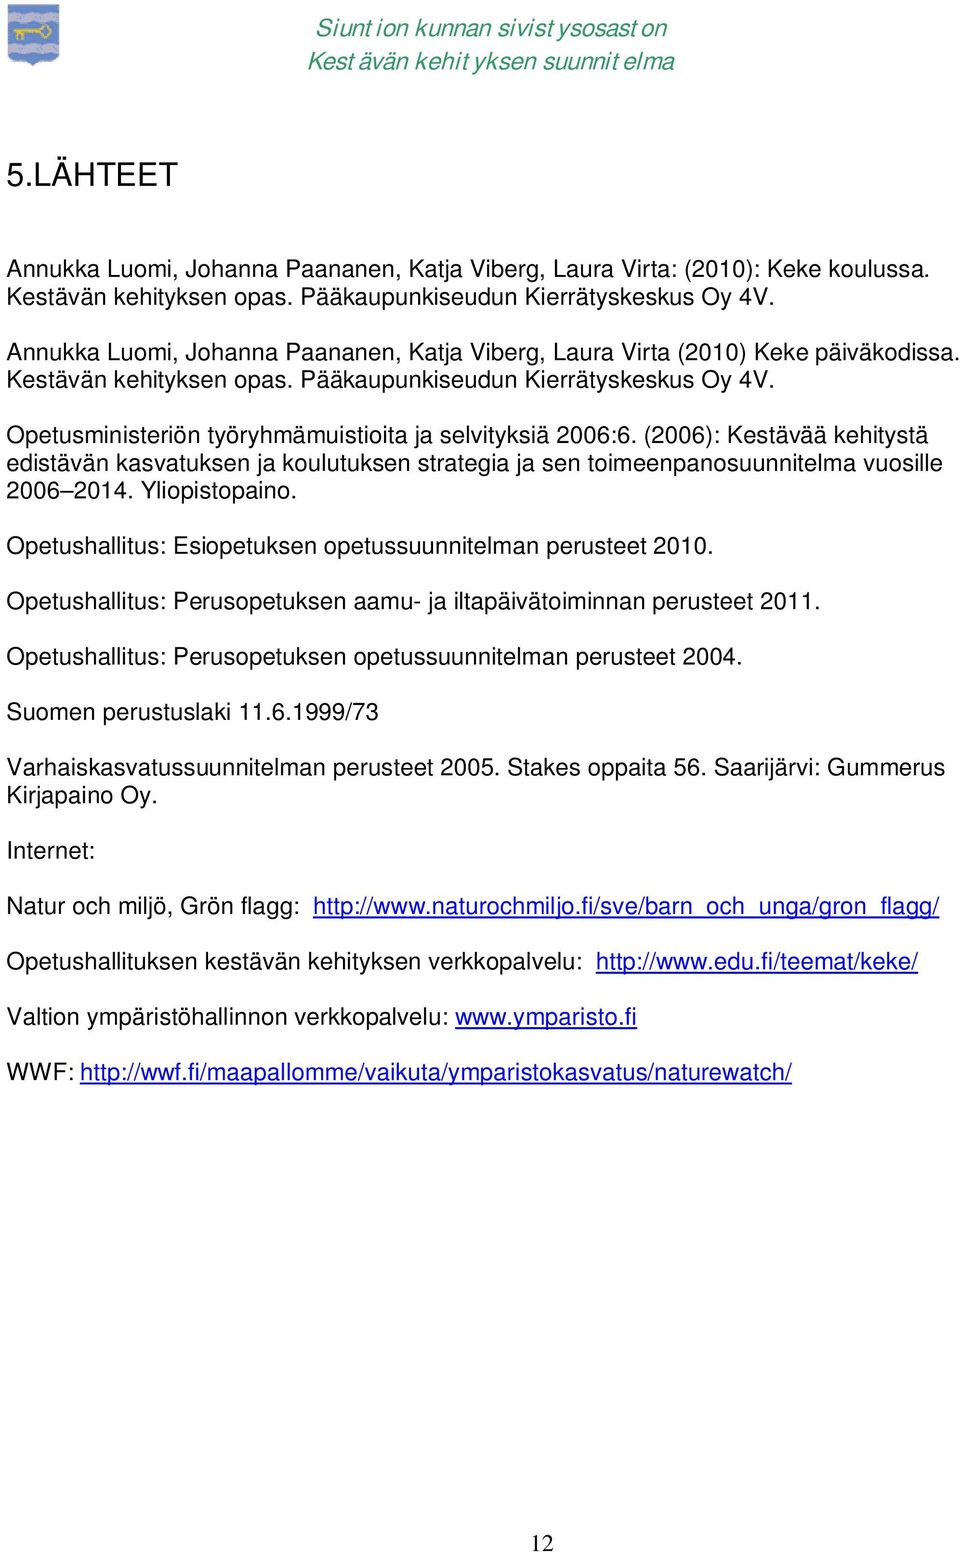 Opetusministeriön työryhmämuistioita ja selvityksiä 2006:6. (2006): Kestävää kehitystä edistävän kasvatuksen ja koulutuksen strategia ja sen toimeenpanosuunnitelma vuosille 2006 2014. Yliopistopaino.